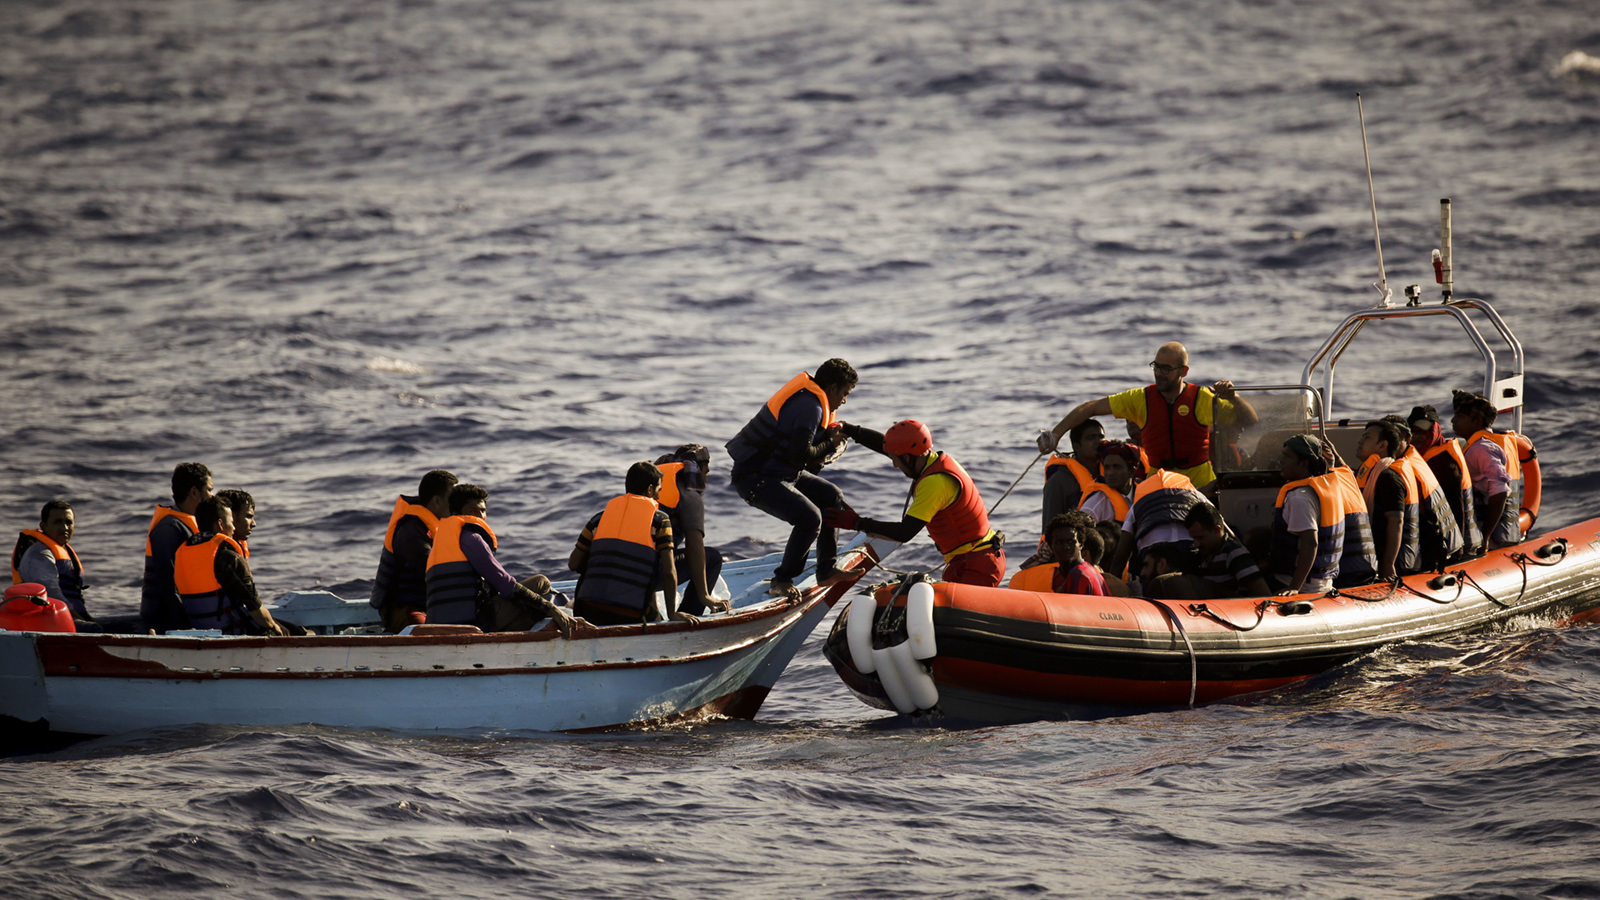 כוחות הצלה ספרדים מחלצים פליטים לובים מסירת הצלה לאחר שסירתם טבעה בדרכה לחופי איטליה. ארכיון (צילום: AP)